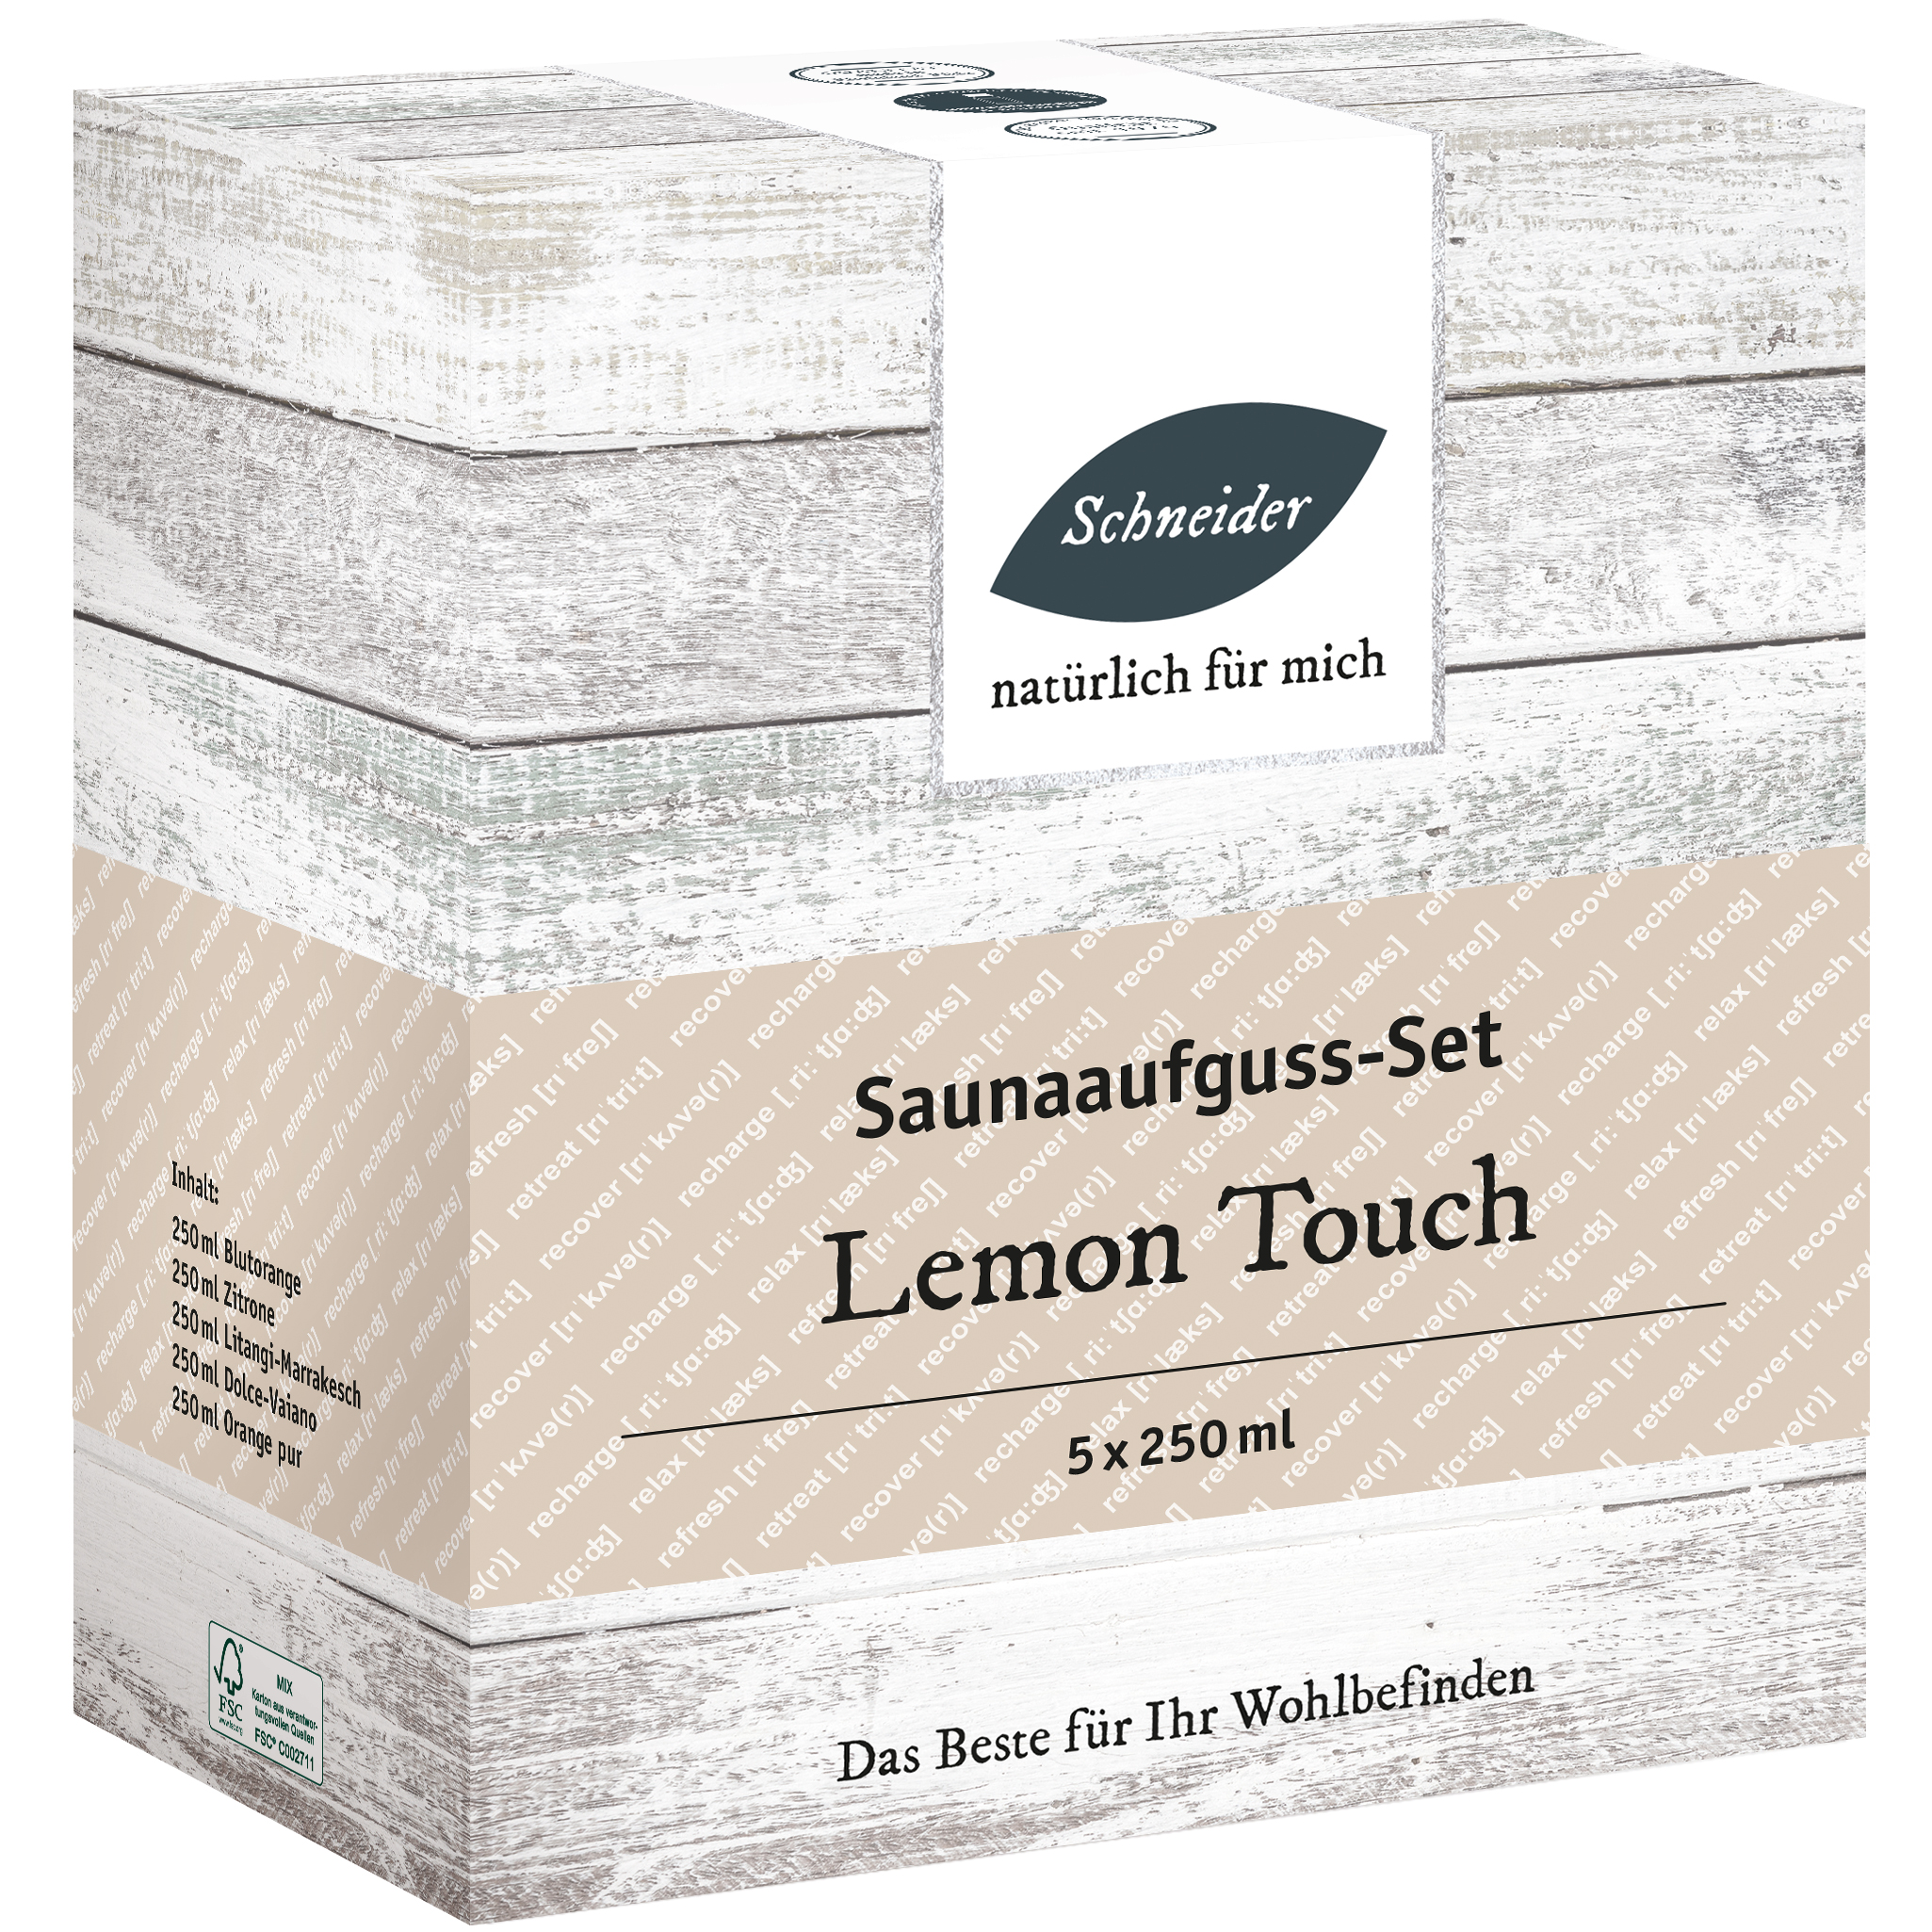 Saunaaufguss-Set - Lemon Touch